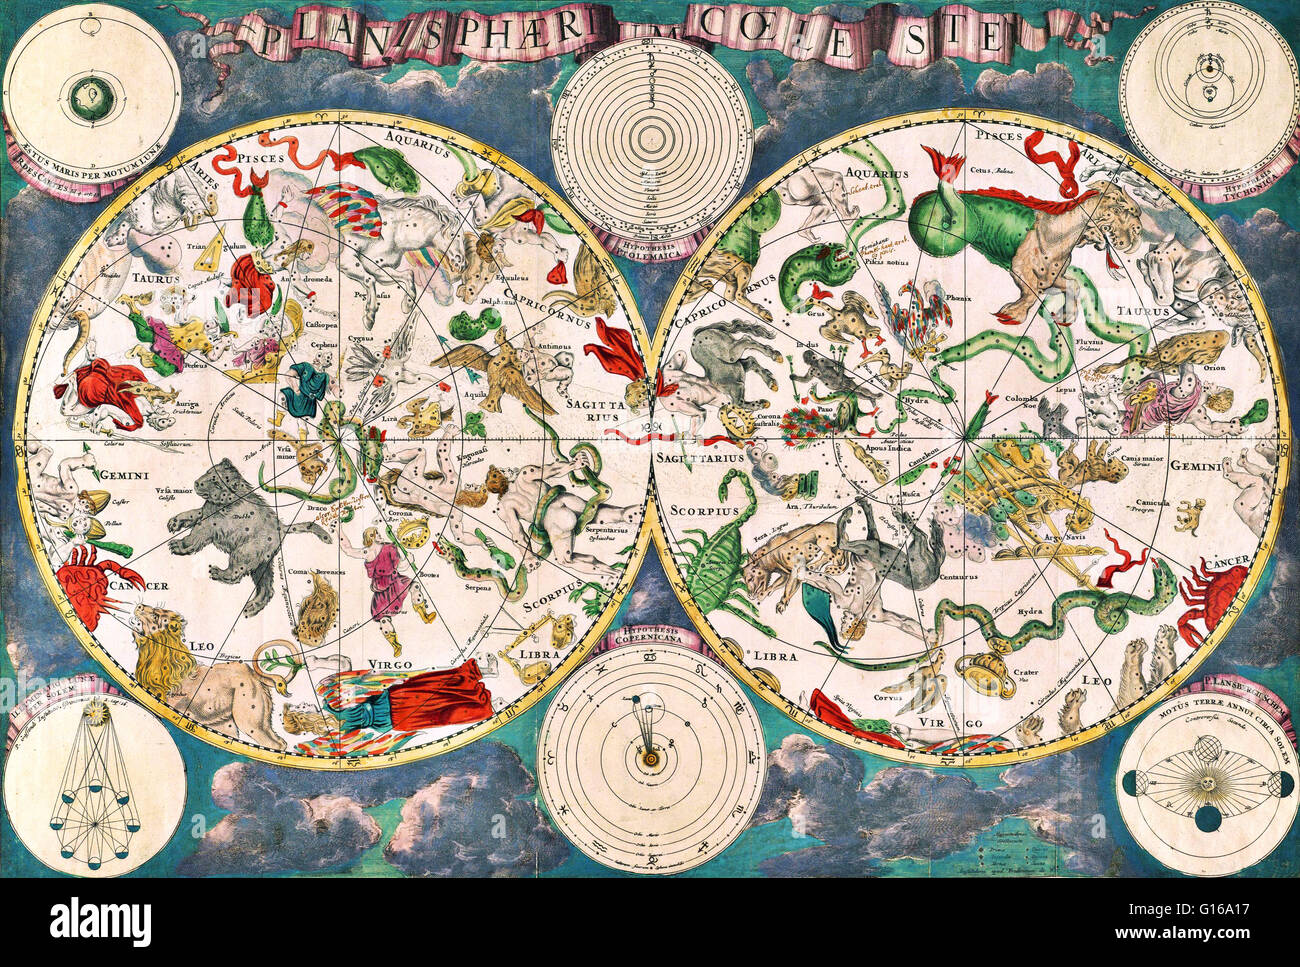 Planisphaeri coeleste, 1680, un planisphère céleste avec les constellations de l'hémisphère nord et sud avec des représentations traditionnelles des signes du zodiaque et les constellations, y compris Draco, serpens et Hydra. L'astronomie et ce. Banque D'Images